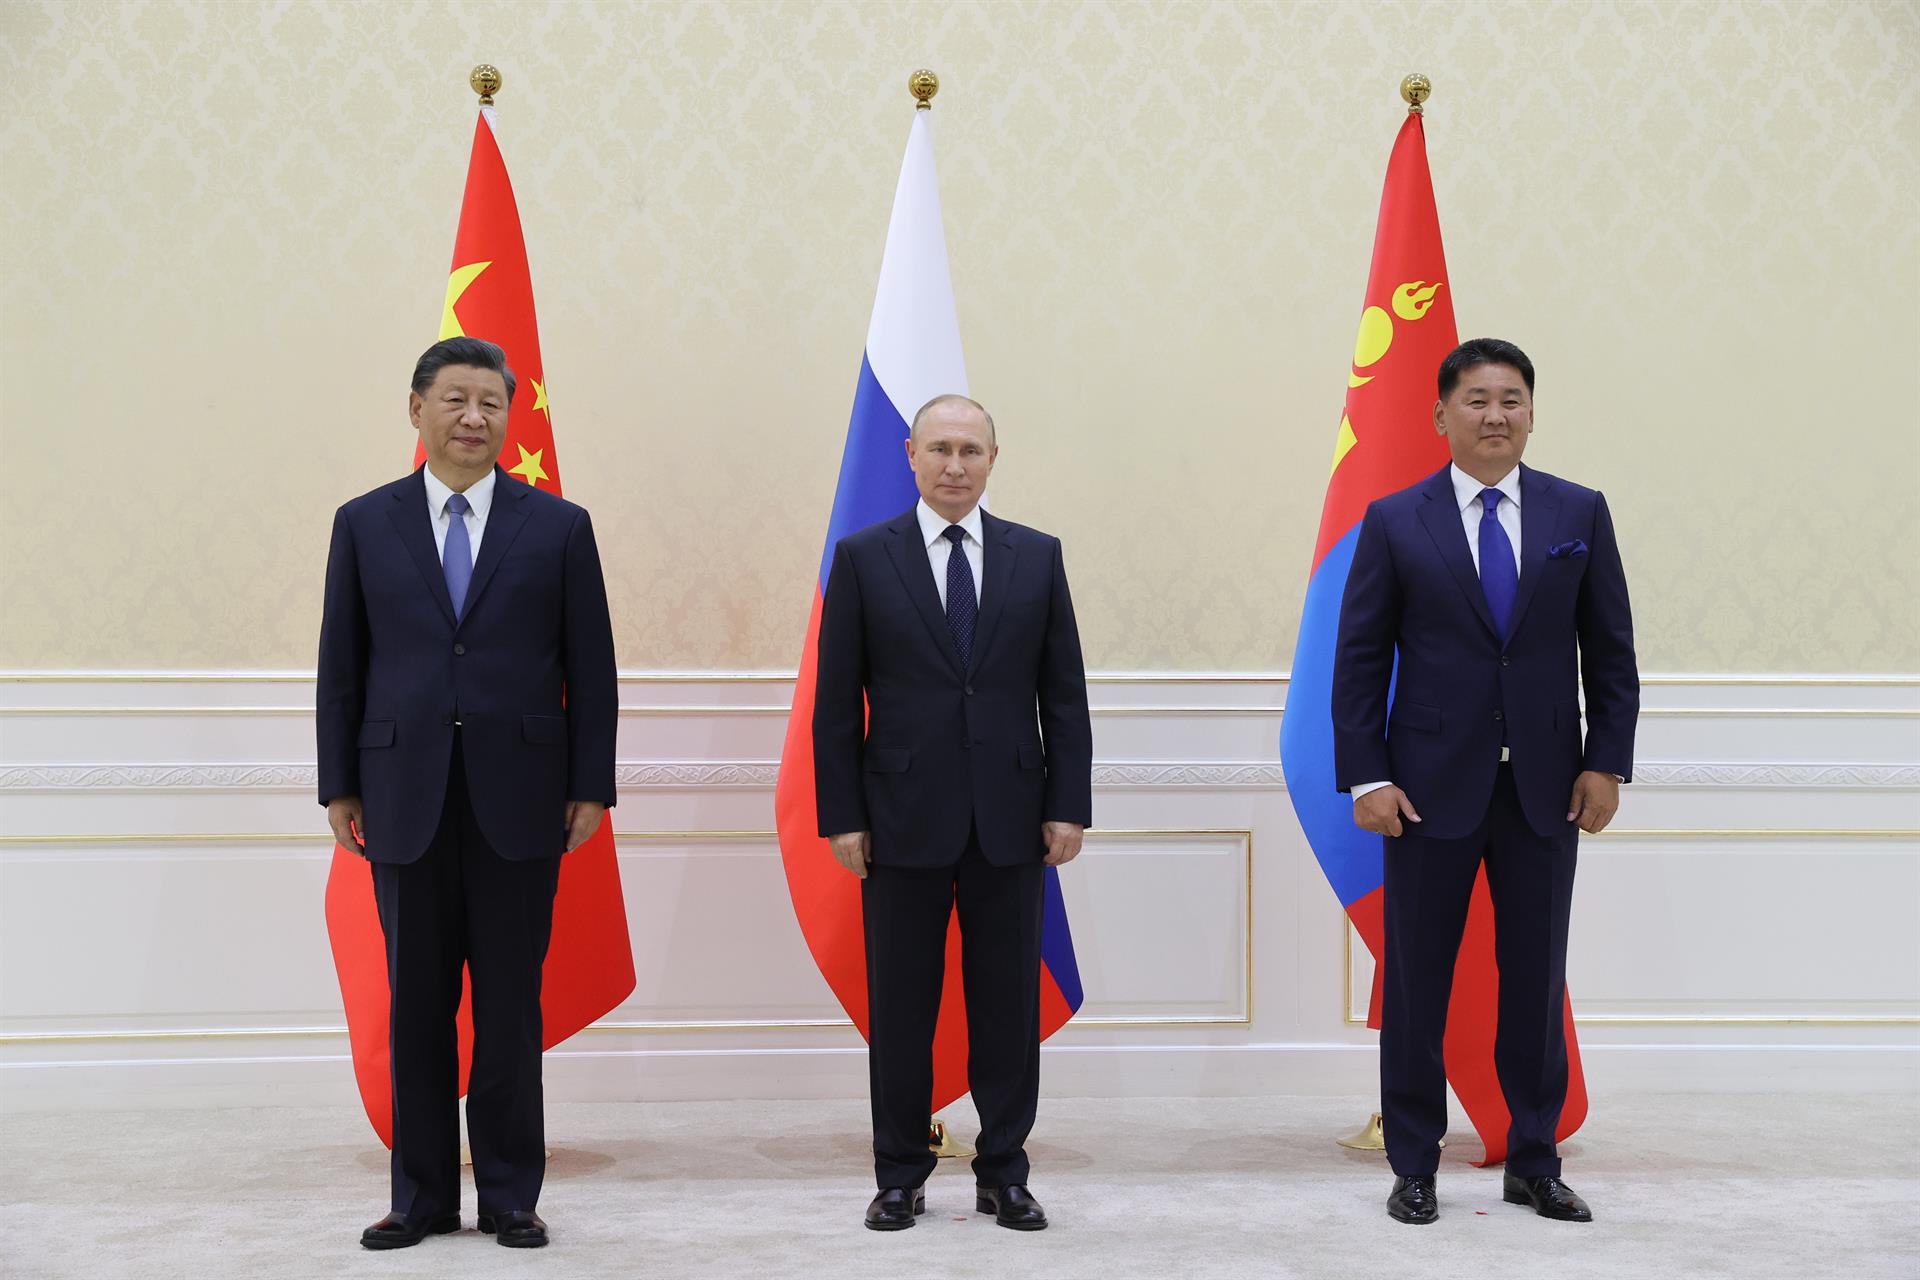 Primera reunió de Putin i Xi després de la invasió d'Ucraïna: suport mutu